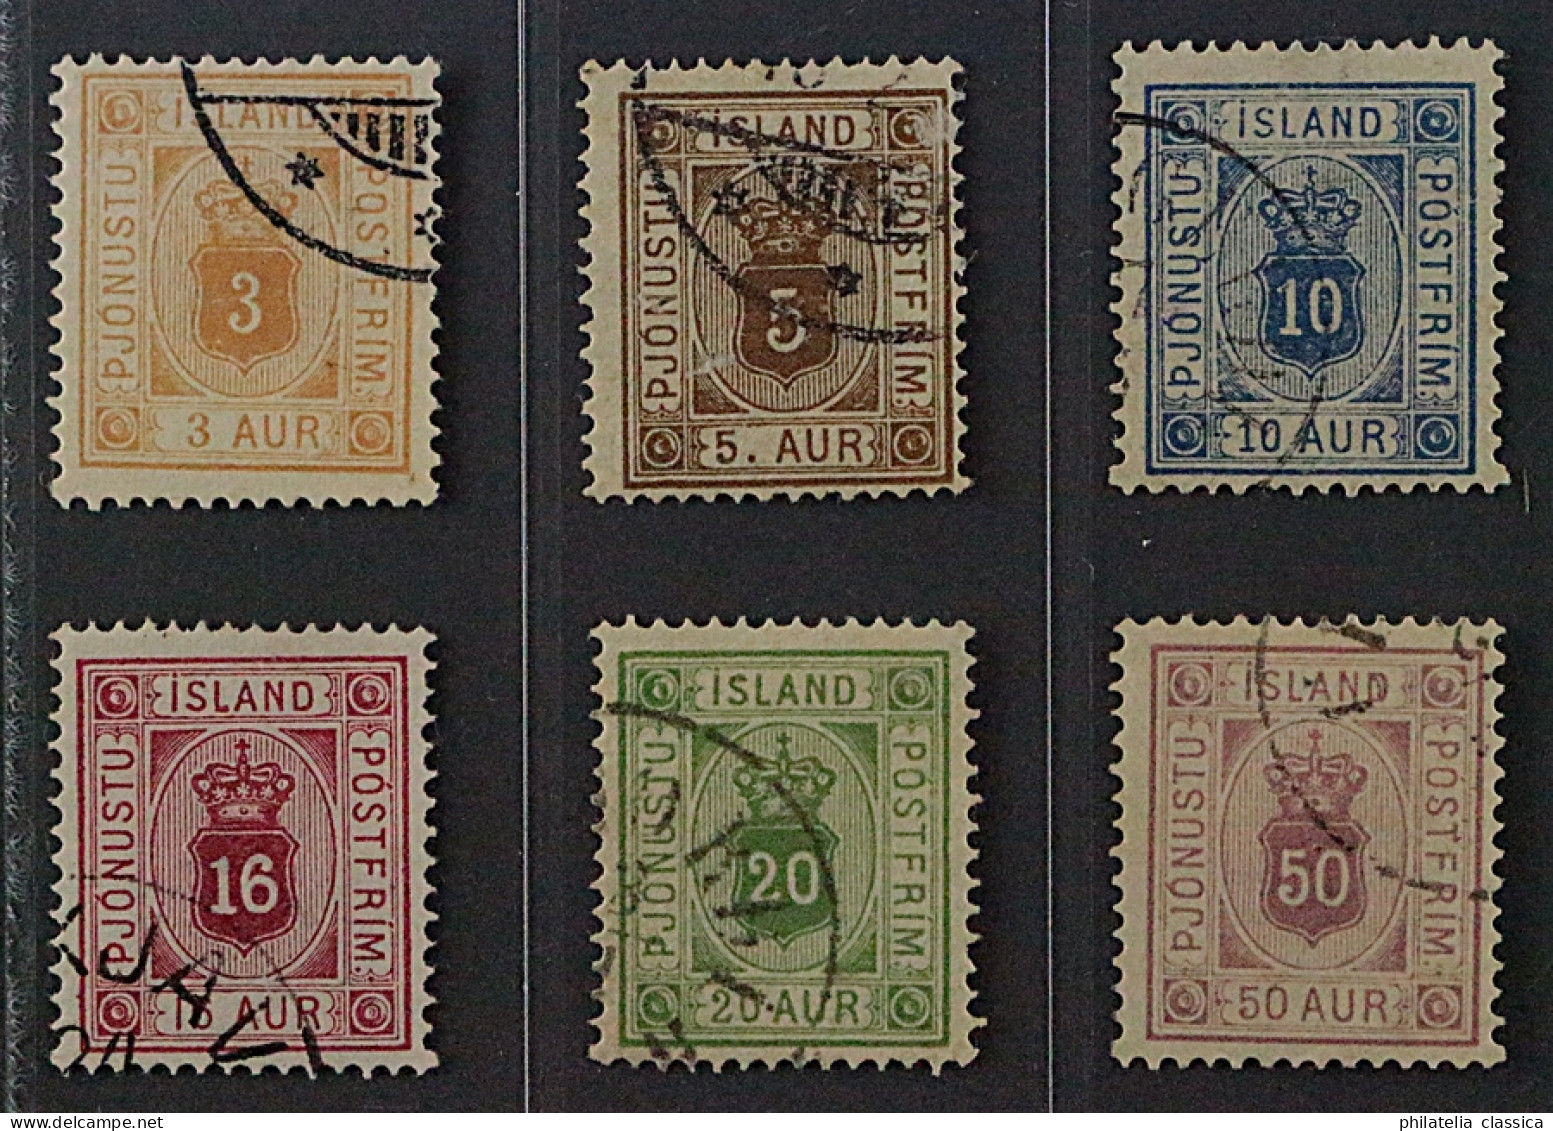 Island  3-8 A,  Dienstmarken 1876/95, Zähnung 14, Sauber Gestempelt, KW 248,- € - Officials